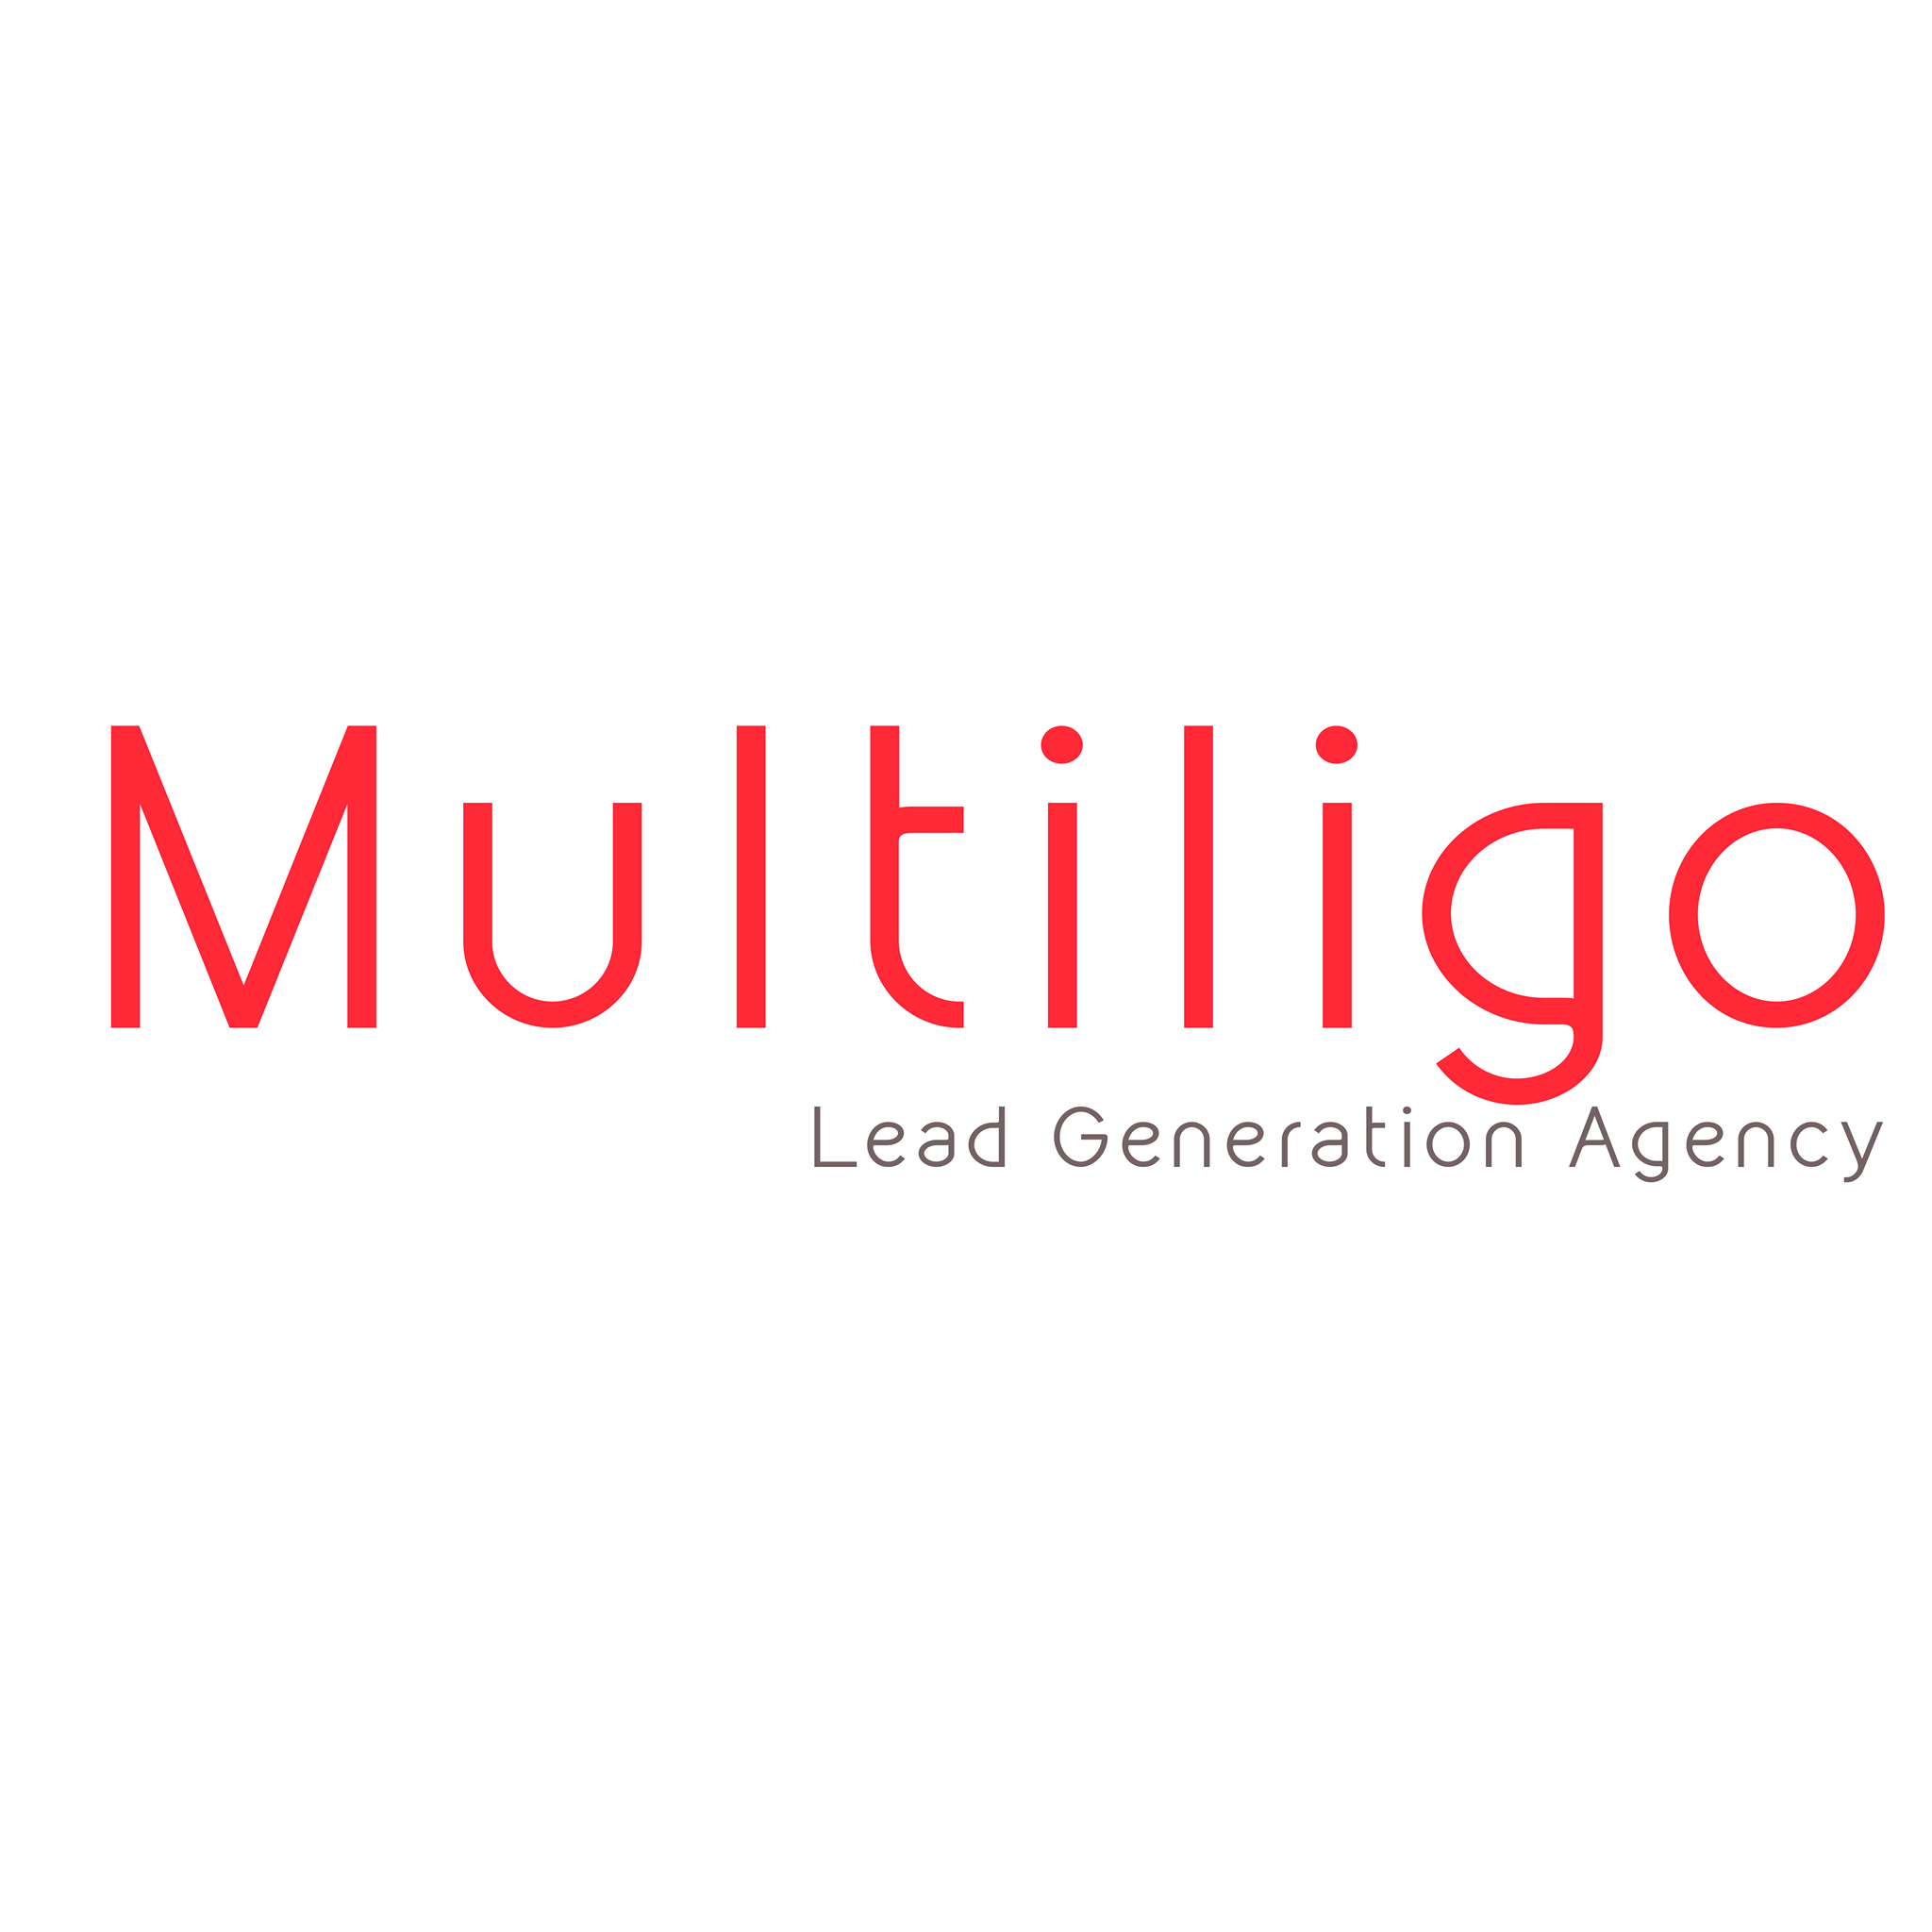 Multiligo | Lead Generation Agency